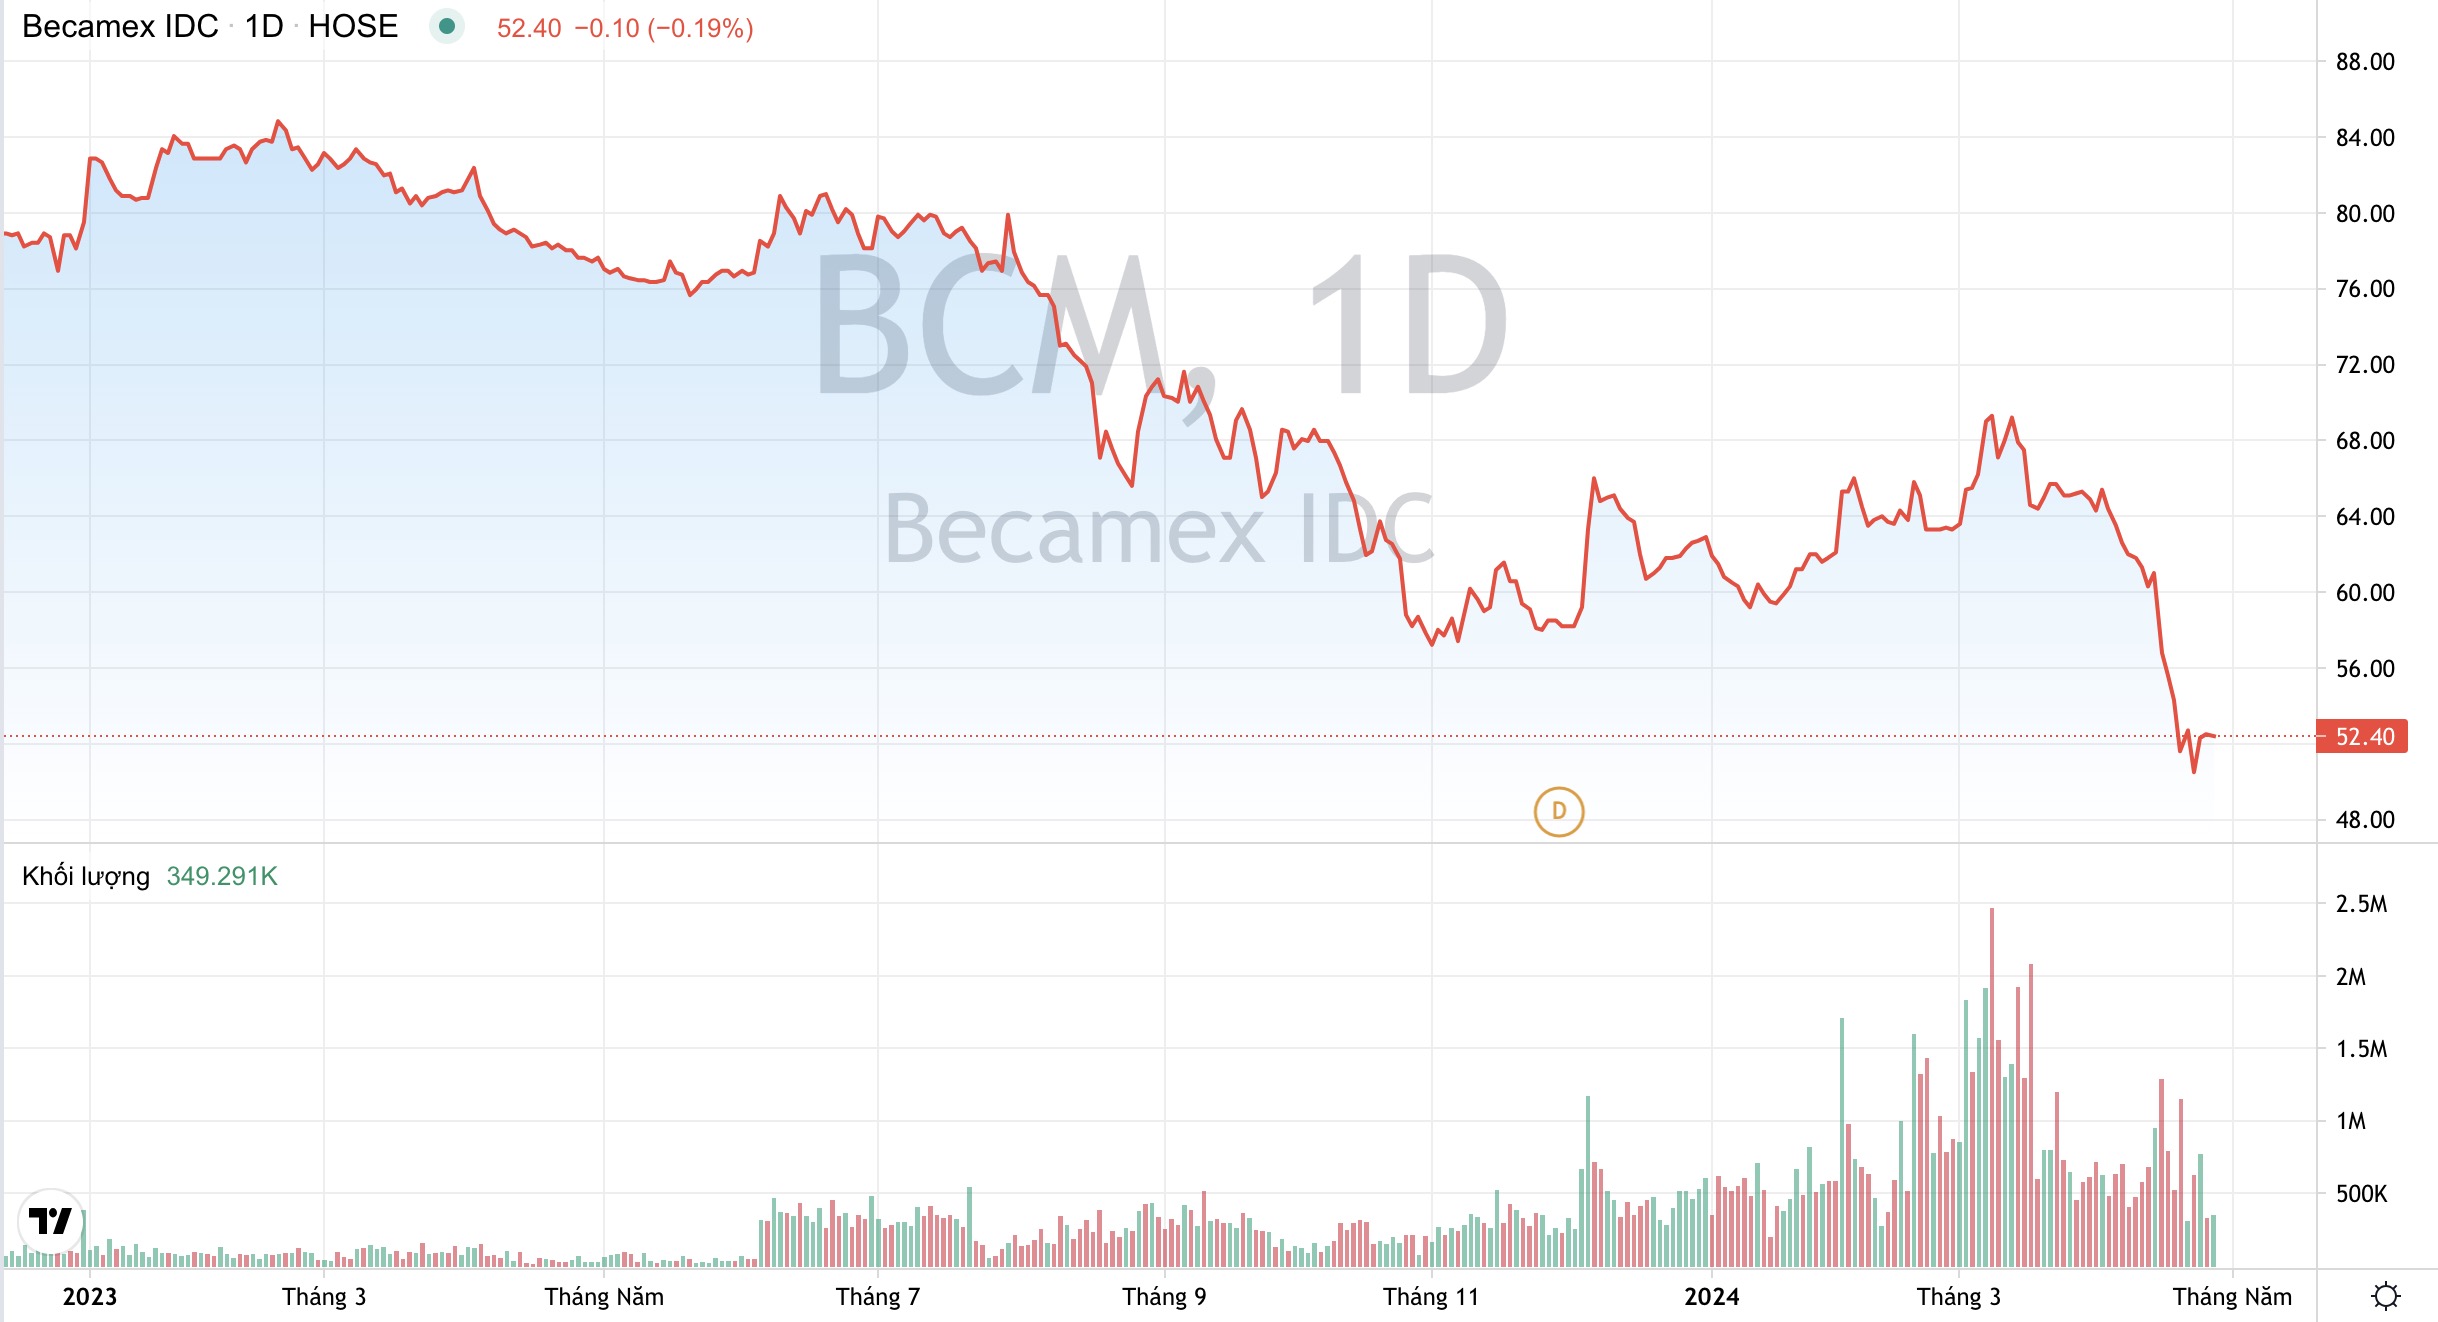 Khối lượng giao dịch và xu hướng giá cổ phiếu BCM của Becamex IDC từ đầu năm 2023 đến nay. (Nguồn: TradingView)